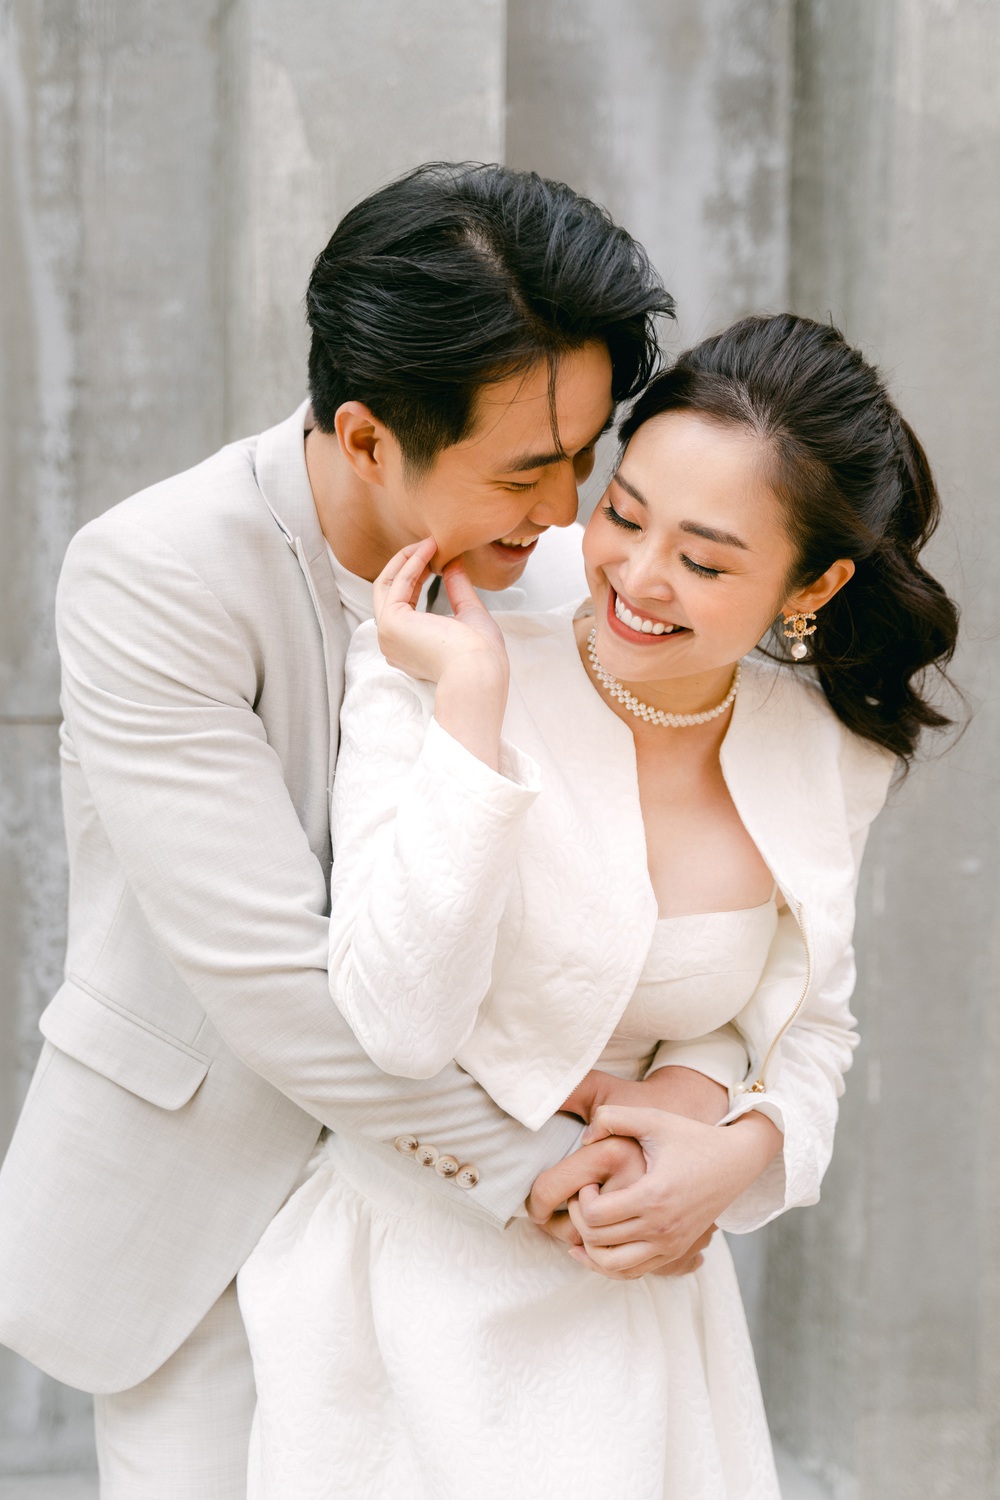 Ảnh cưới của MC Thùy Linh và diễn viên Hiếu Su - Ảnh 2.